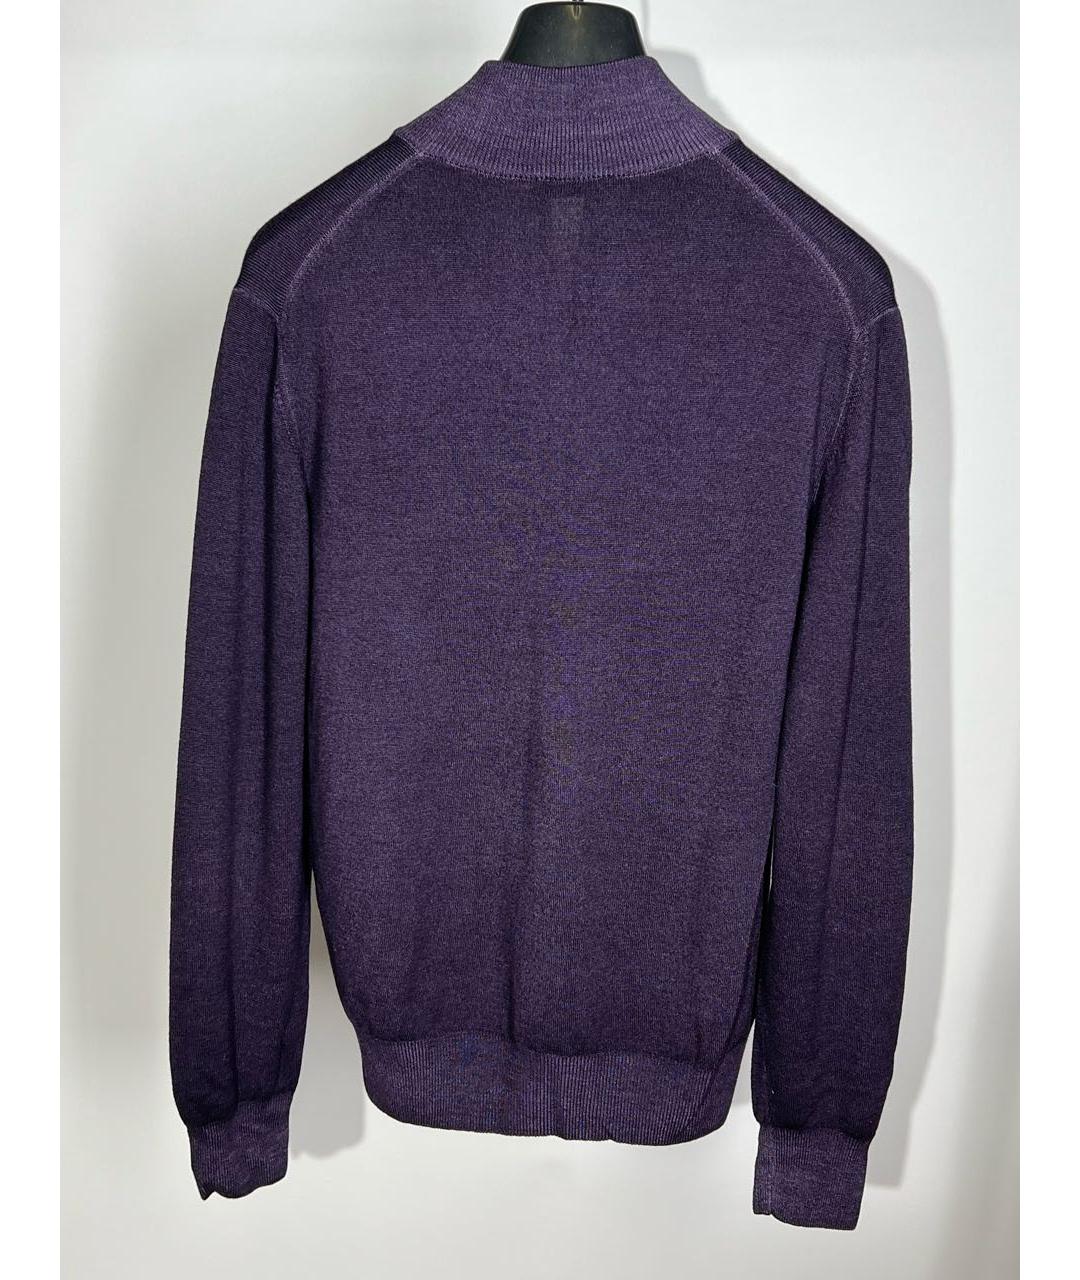 FAY Фиолетовый джемпер / свитер, фото 2